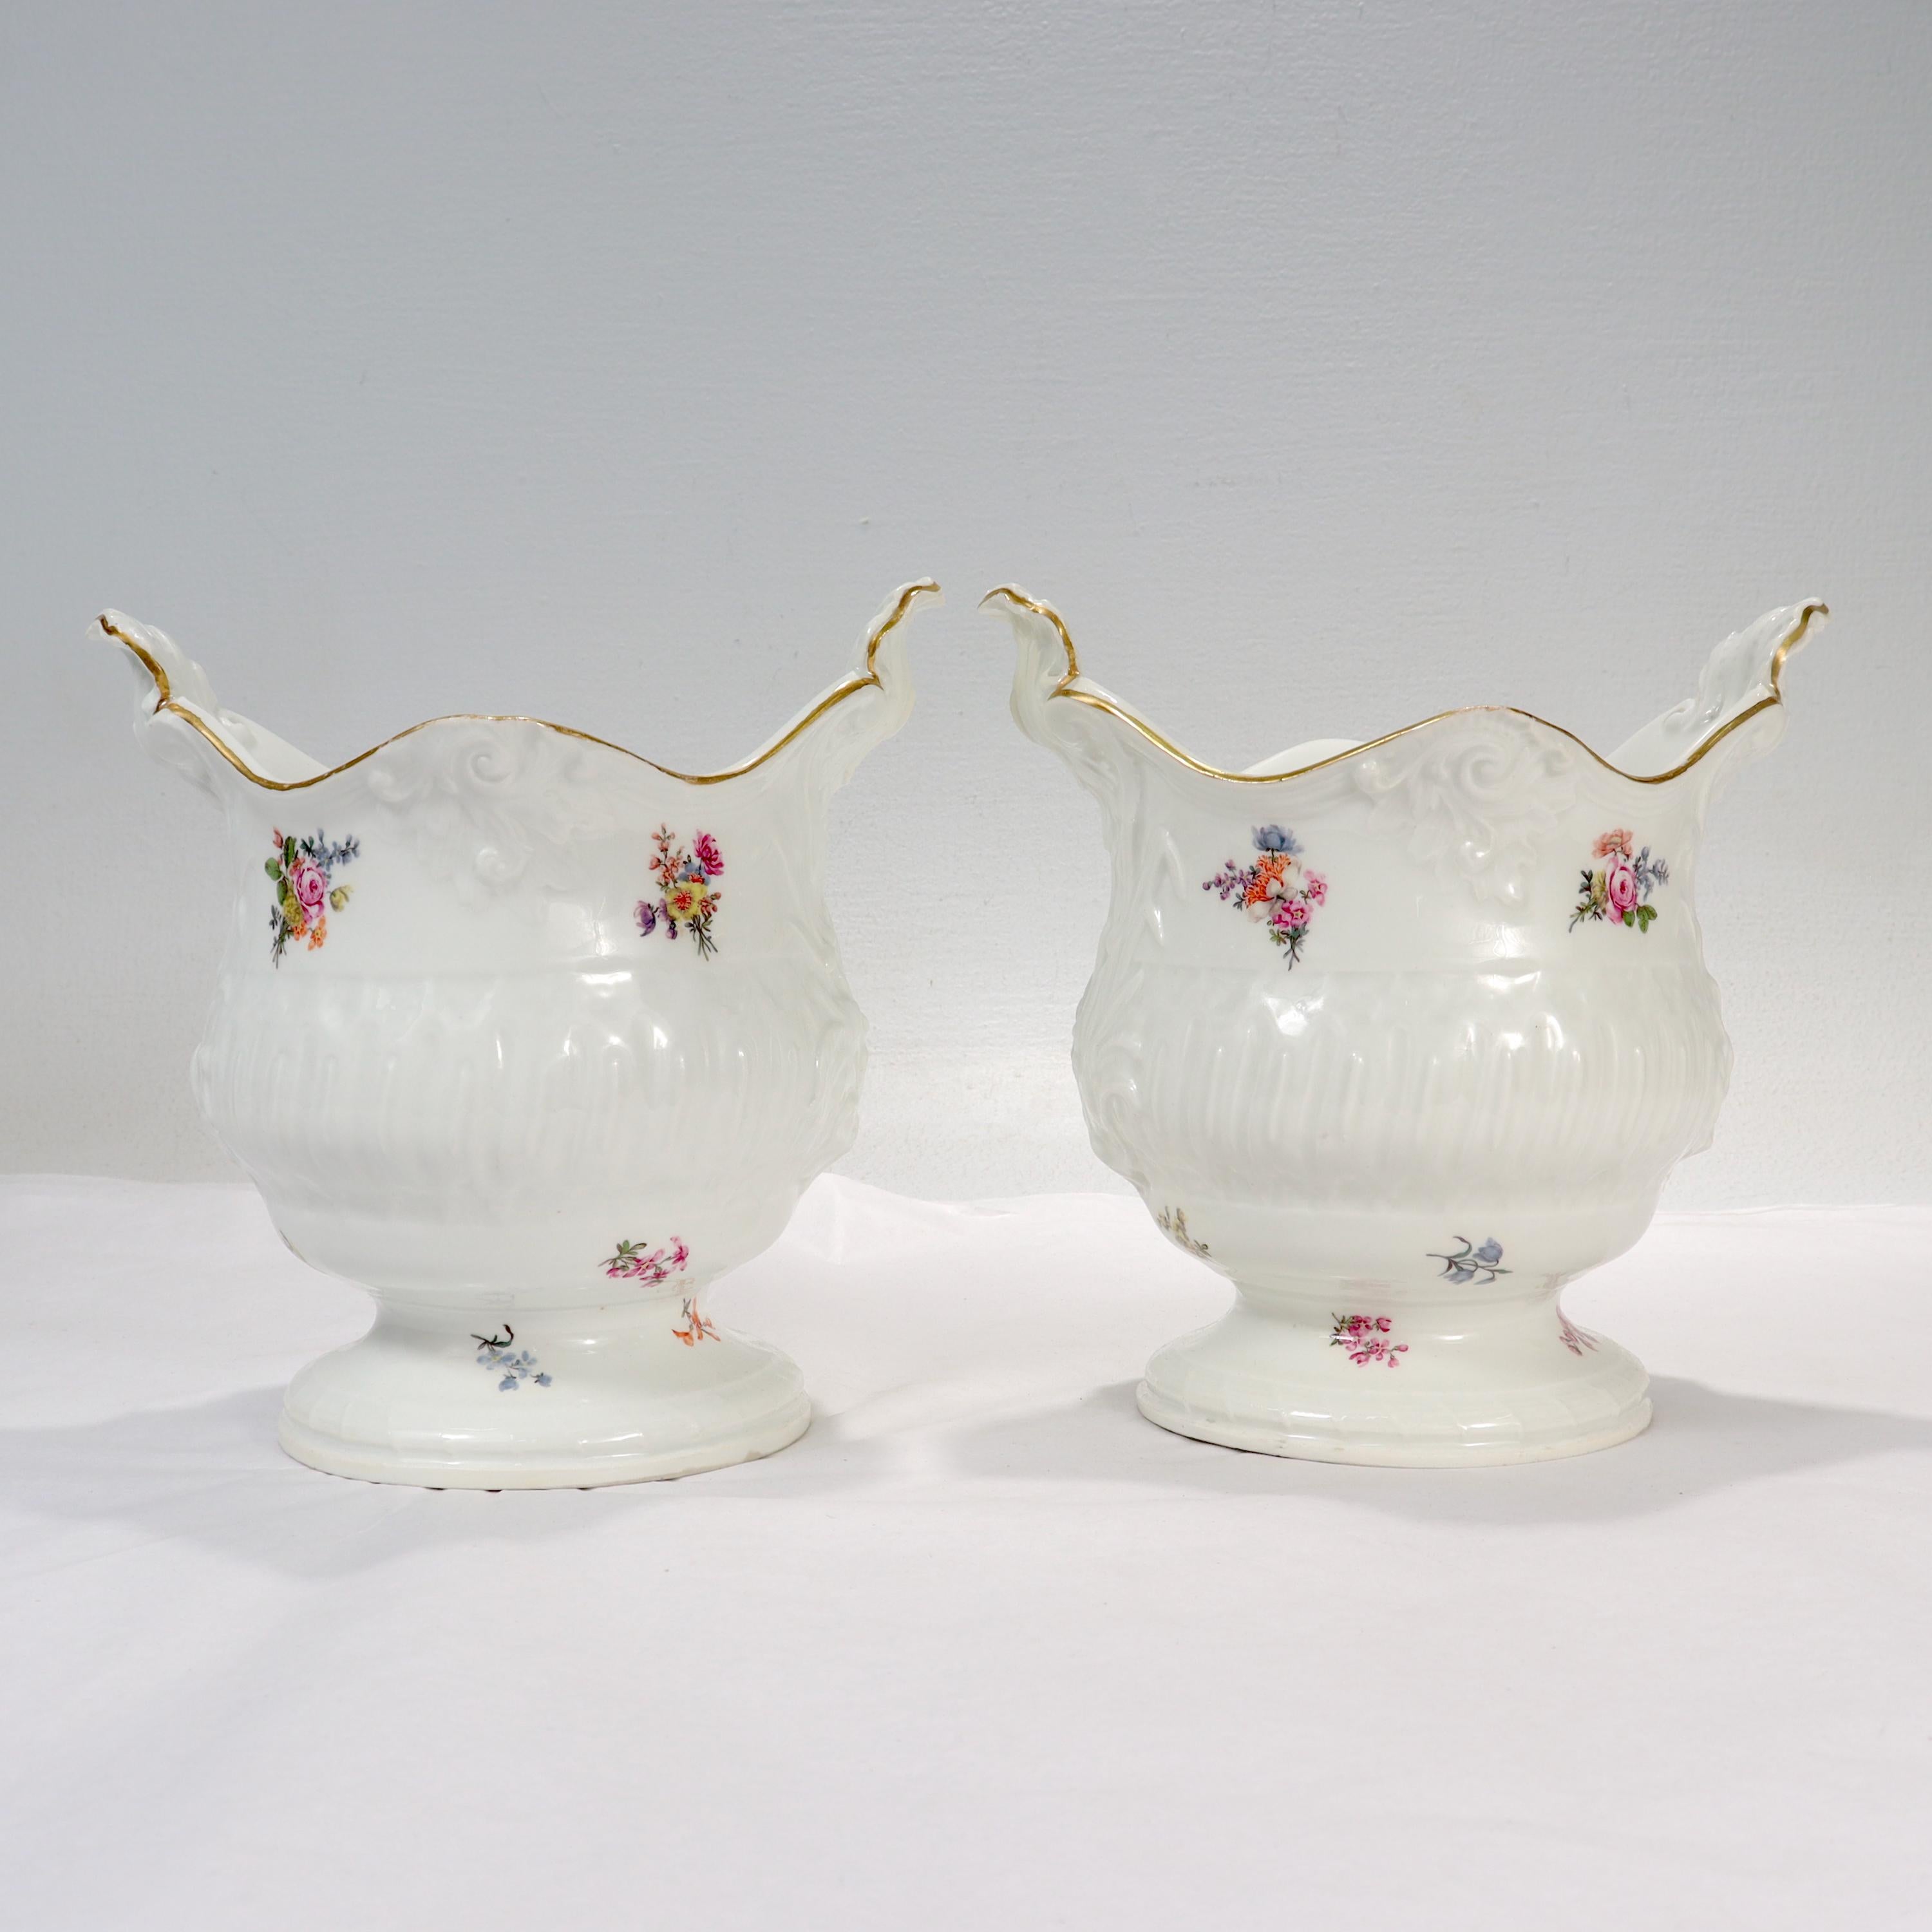 German Pair of Antique 18th / 19th Century Meissen Porcelain Cachepots or Flower Pots For Sale